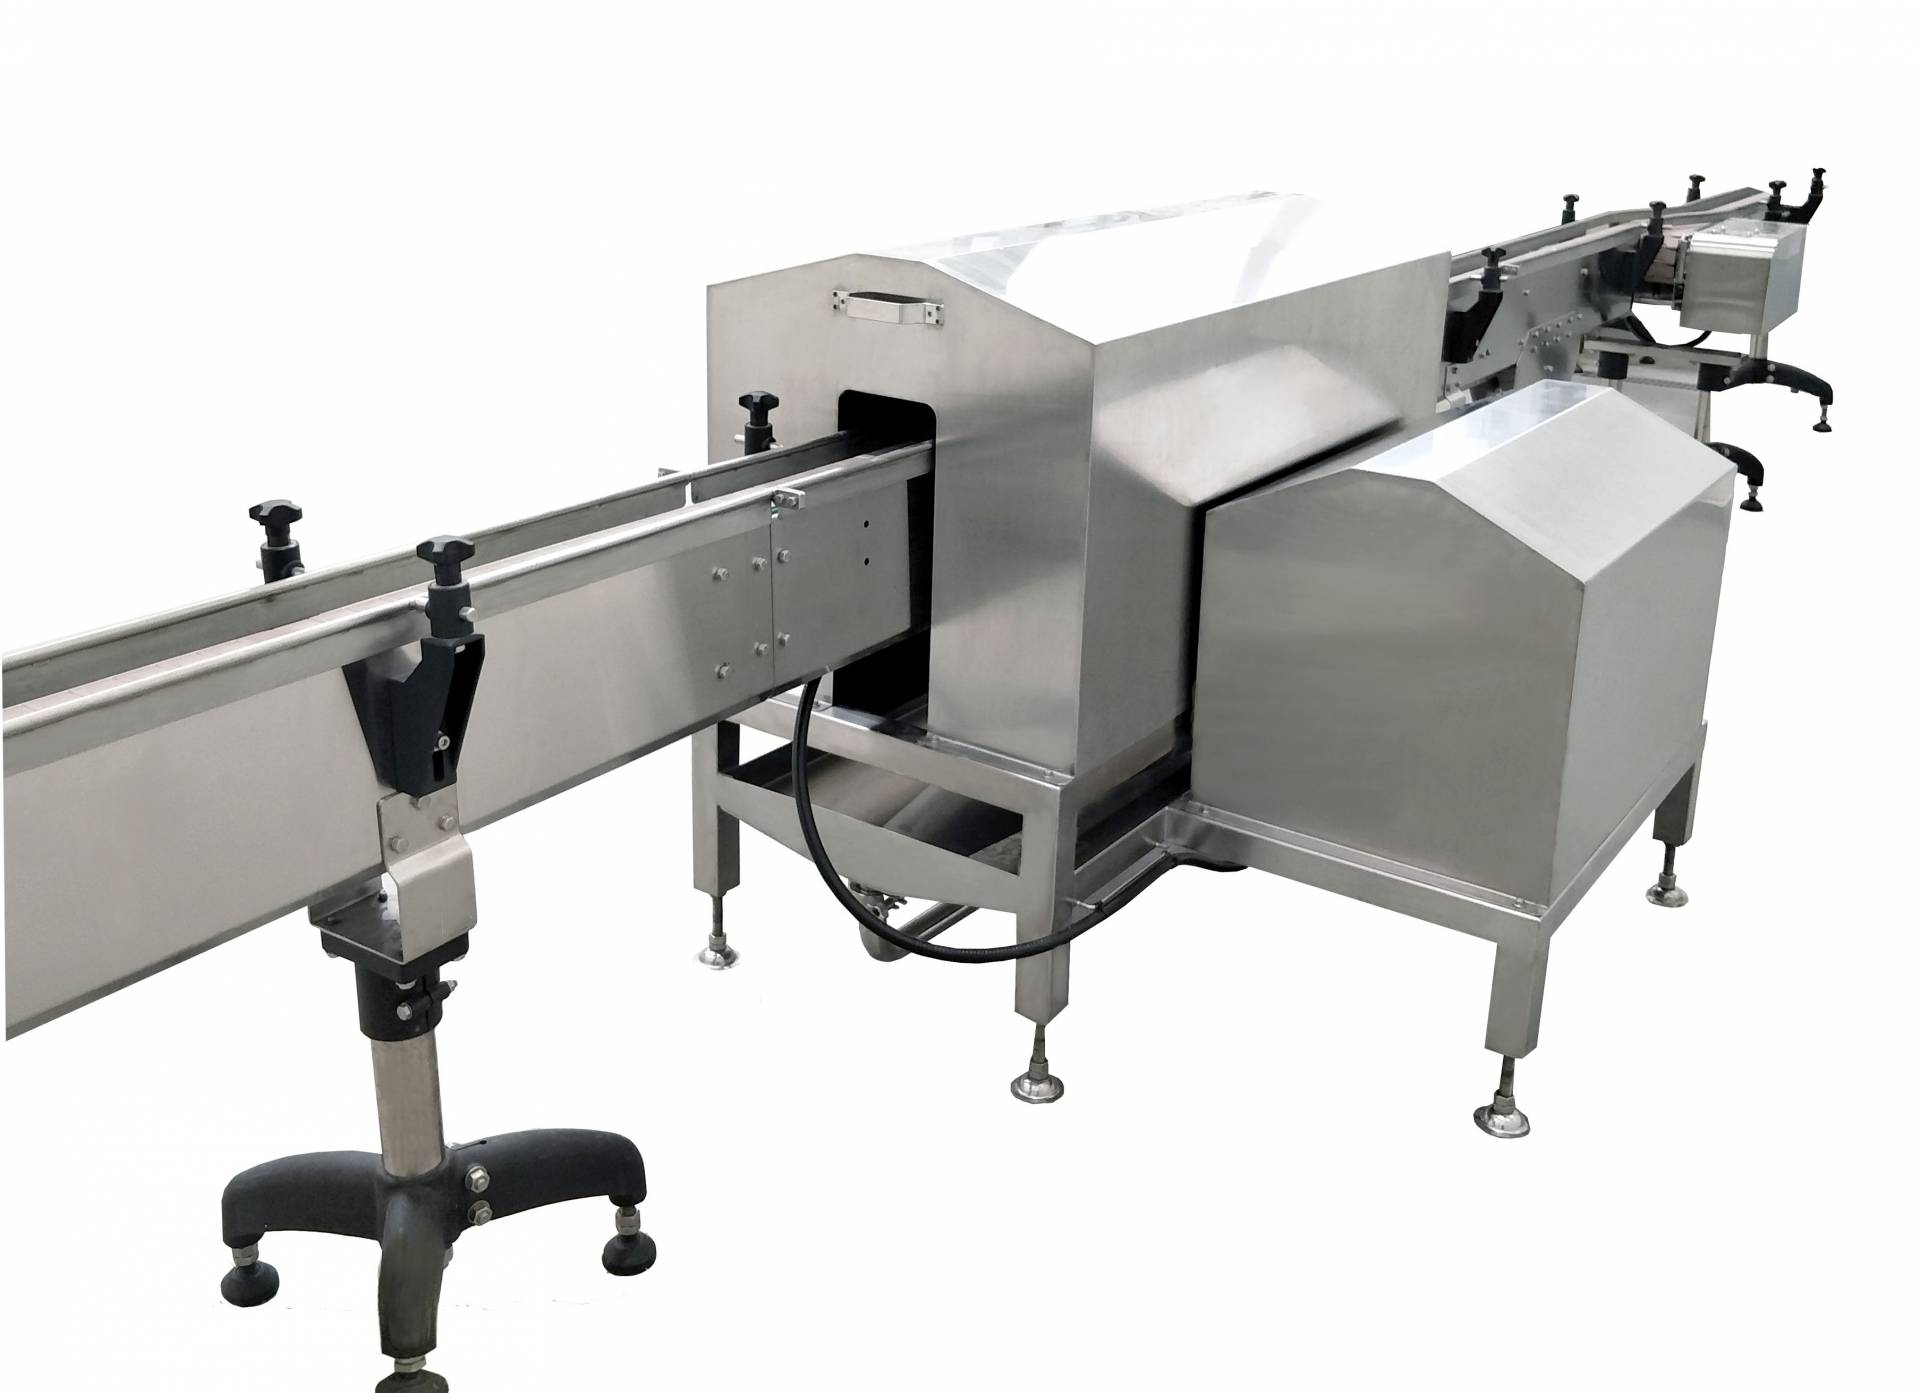 Hava bıçağı kurutma ekipmanı, tofu üretim hattındaki makinelerden biridir.